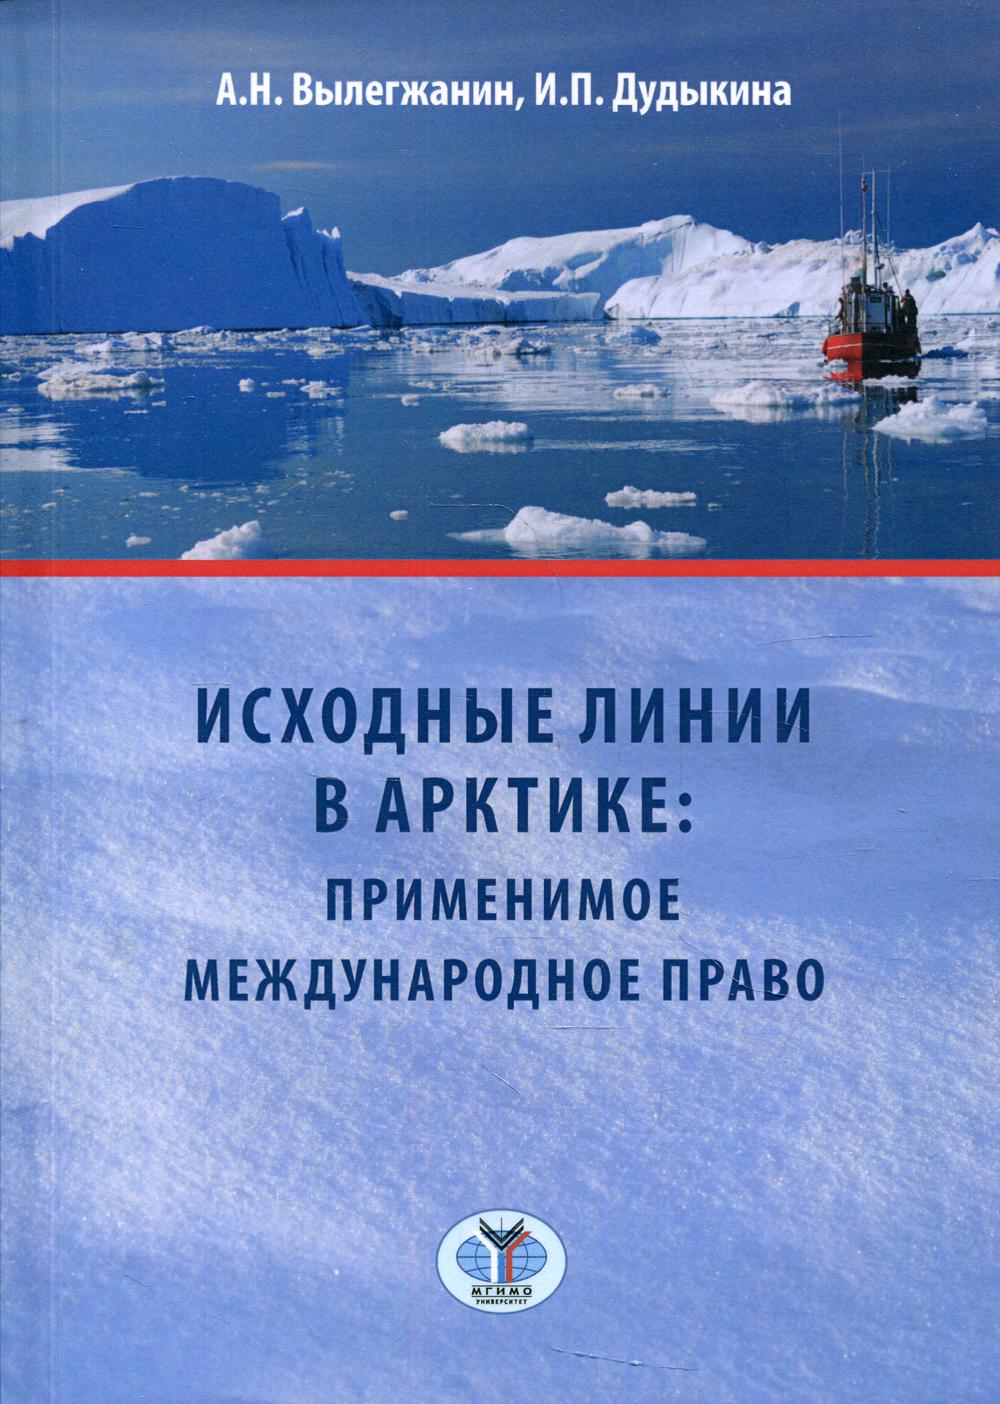 Исходные линии в Арктике: применимое международное право: учебное пособие